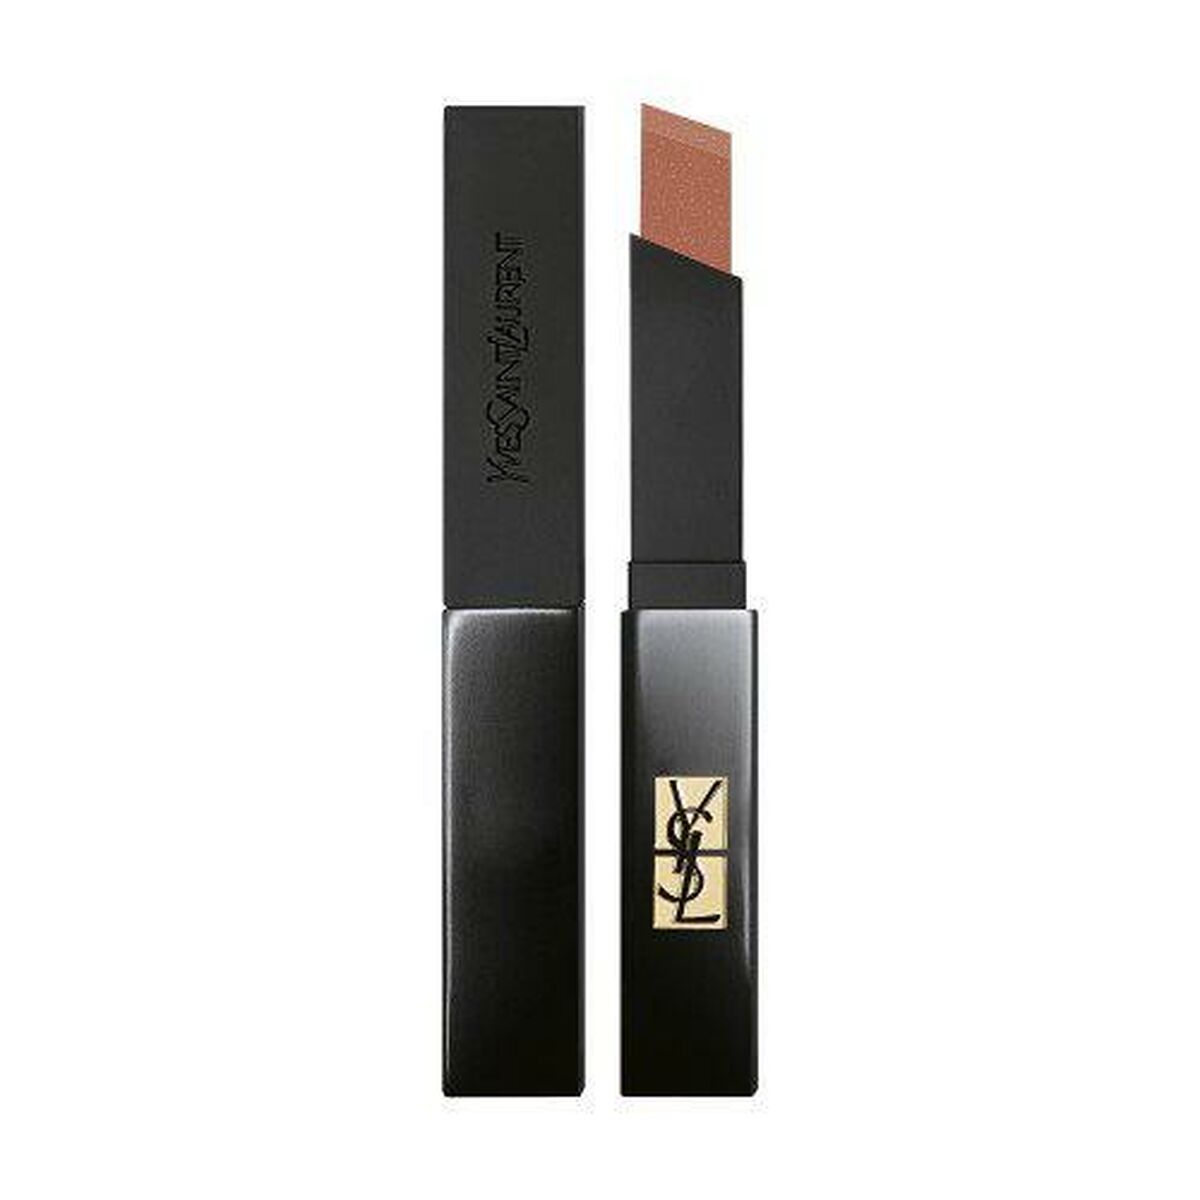 Osta tuote Huulipuna Yves Saint Laurent Nº 317 verkkokaupastamme Korhone: Parfyymit & Kosmetiikka 20% alennuksella koodilla VIIKONLOPPU